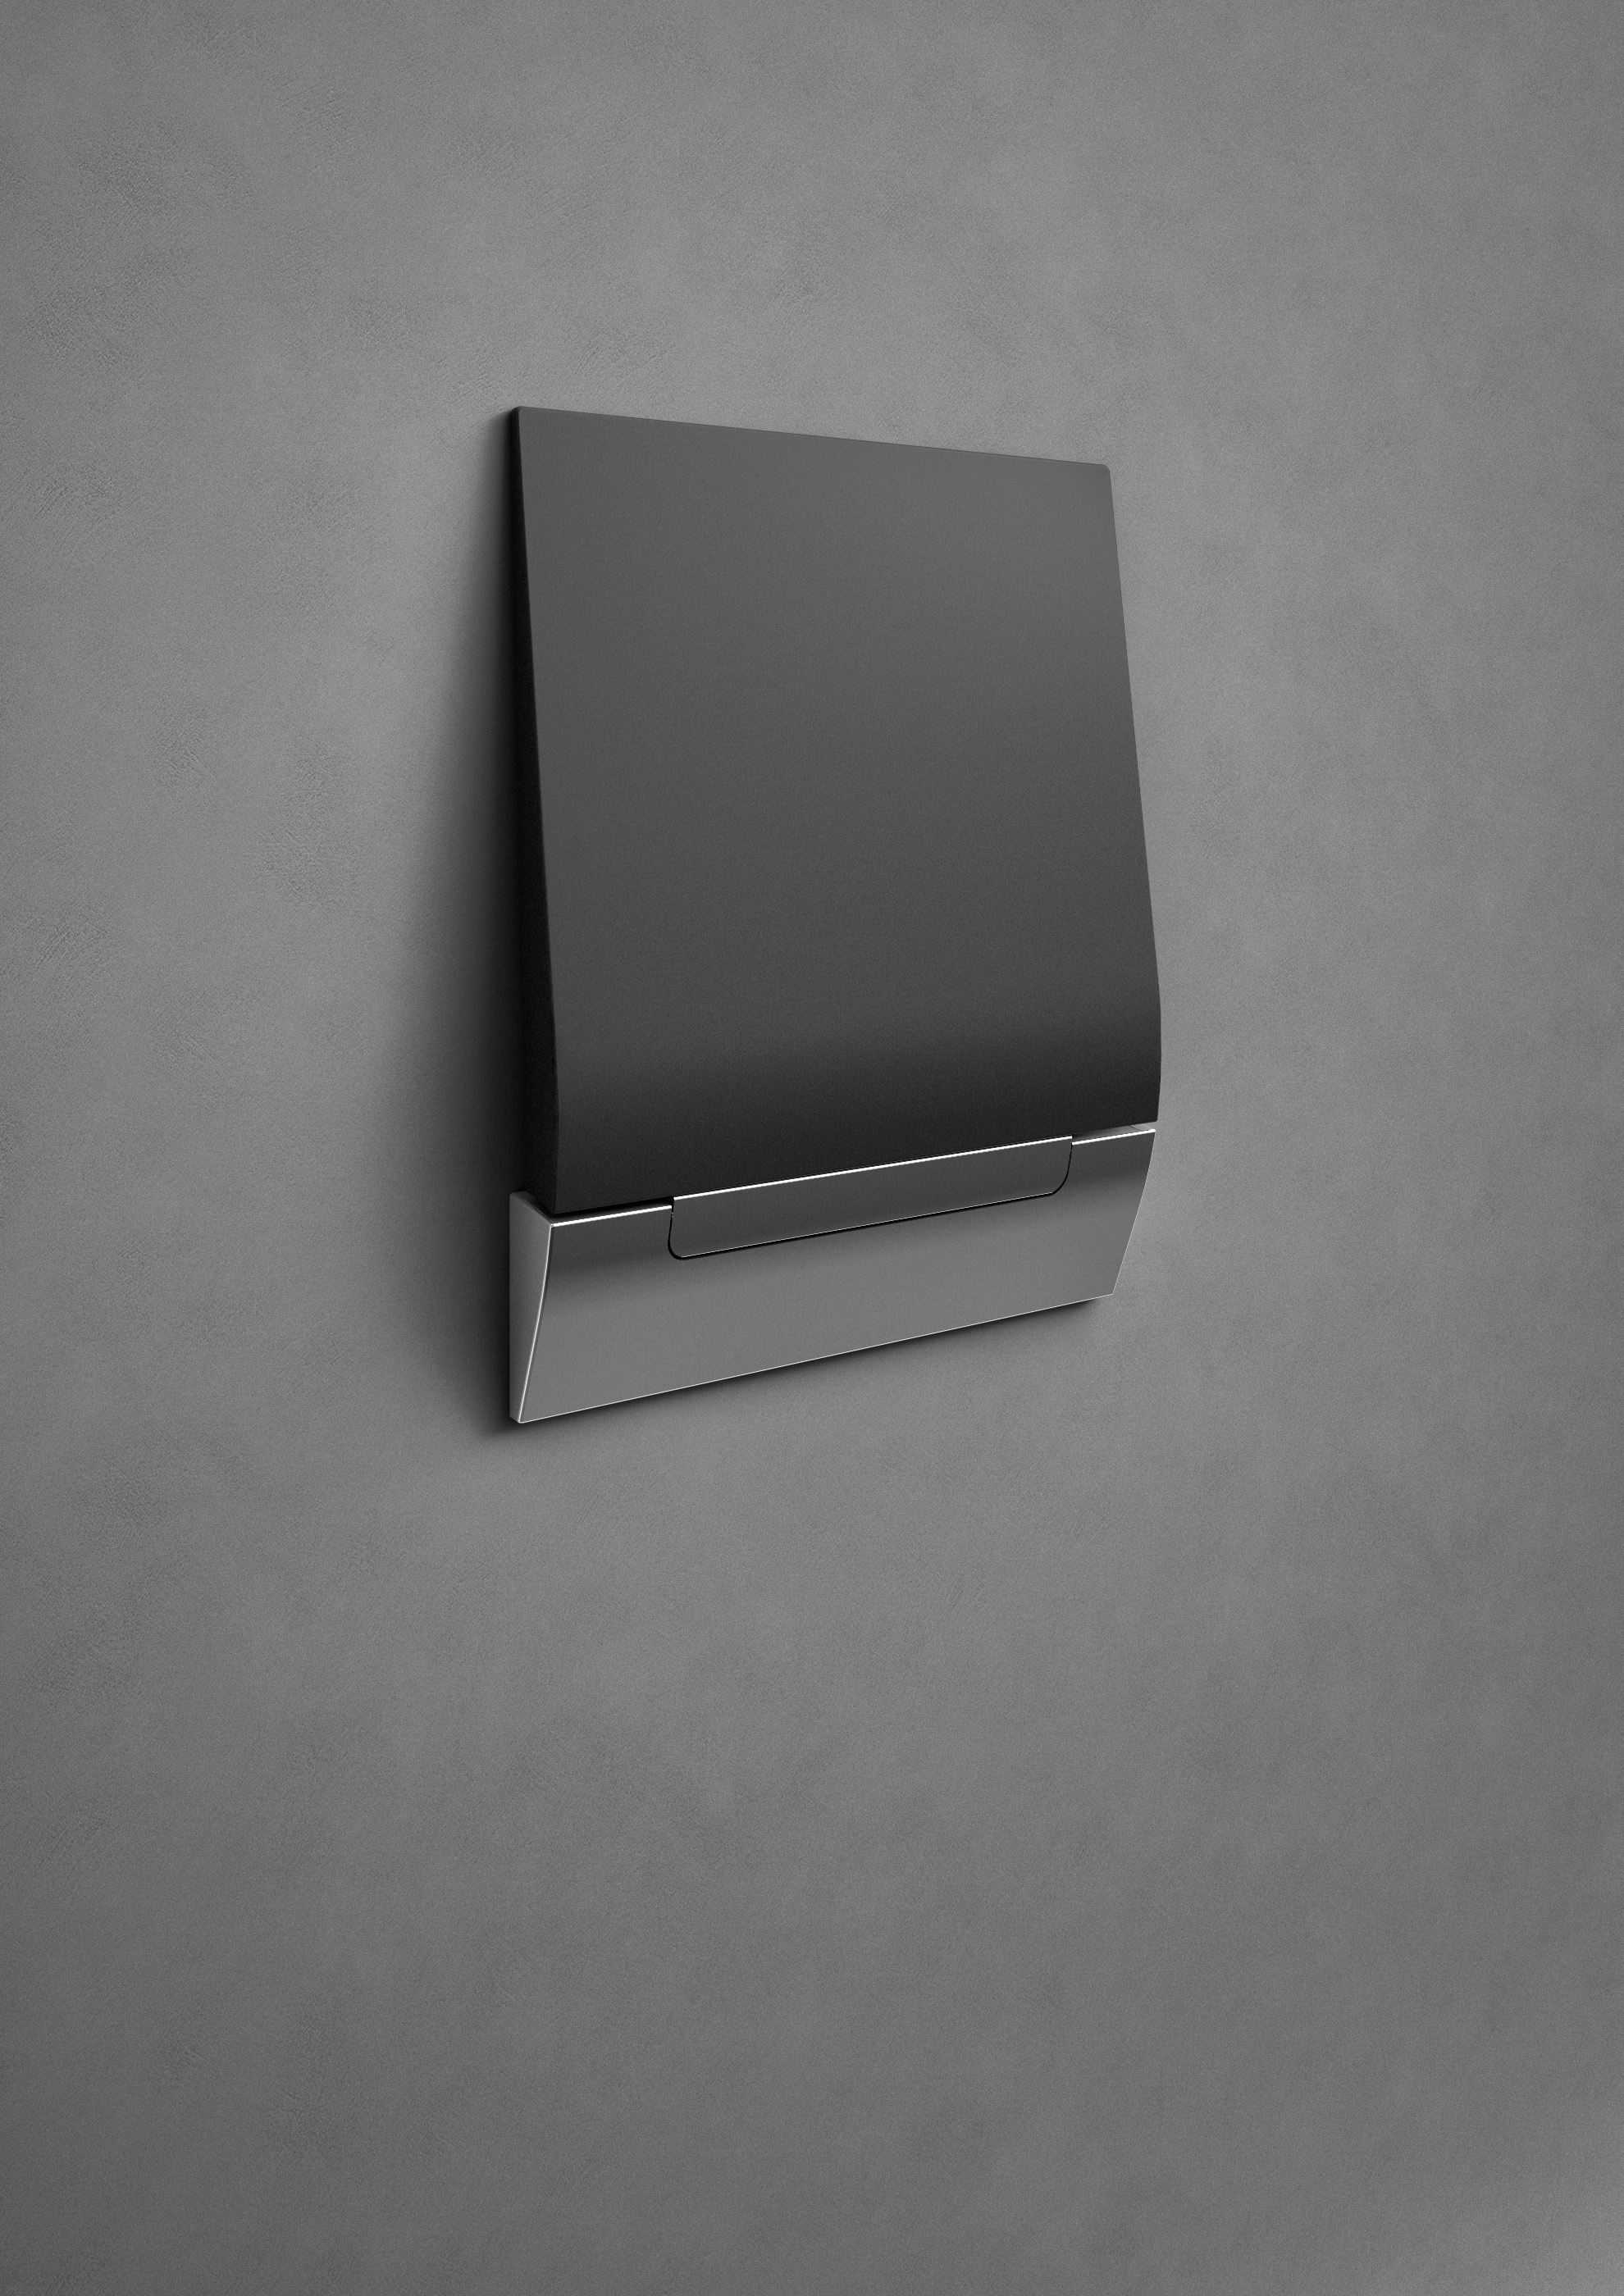 Il sedile doccia ribaltabile di Provex in versione nera, chiuso a parete